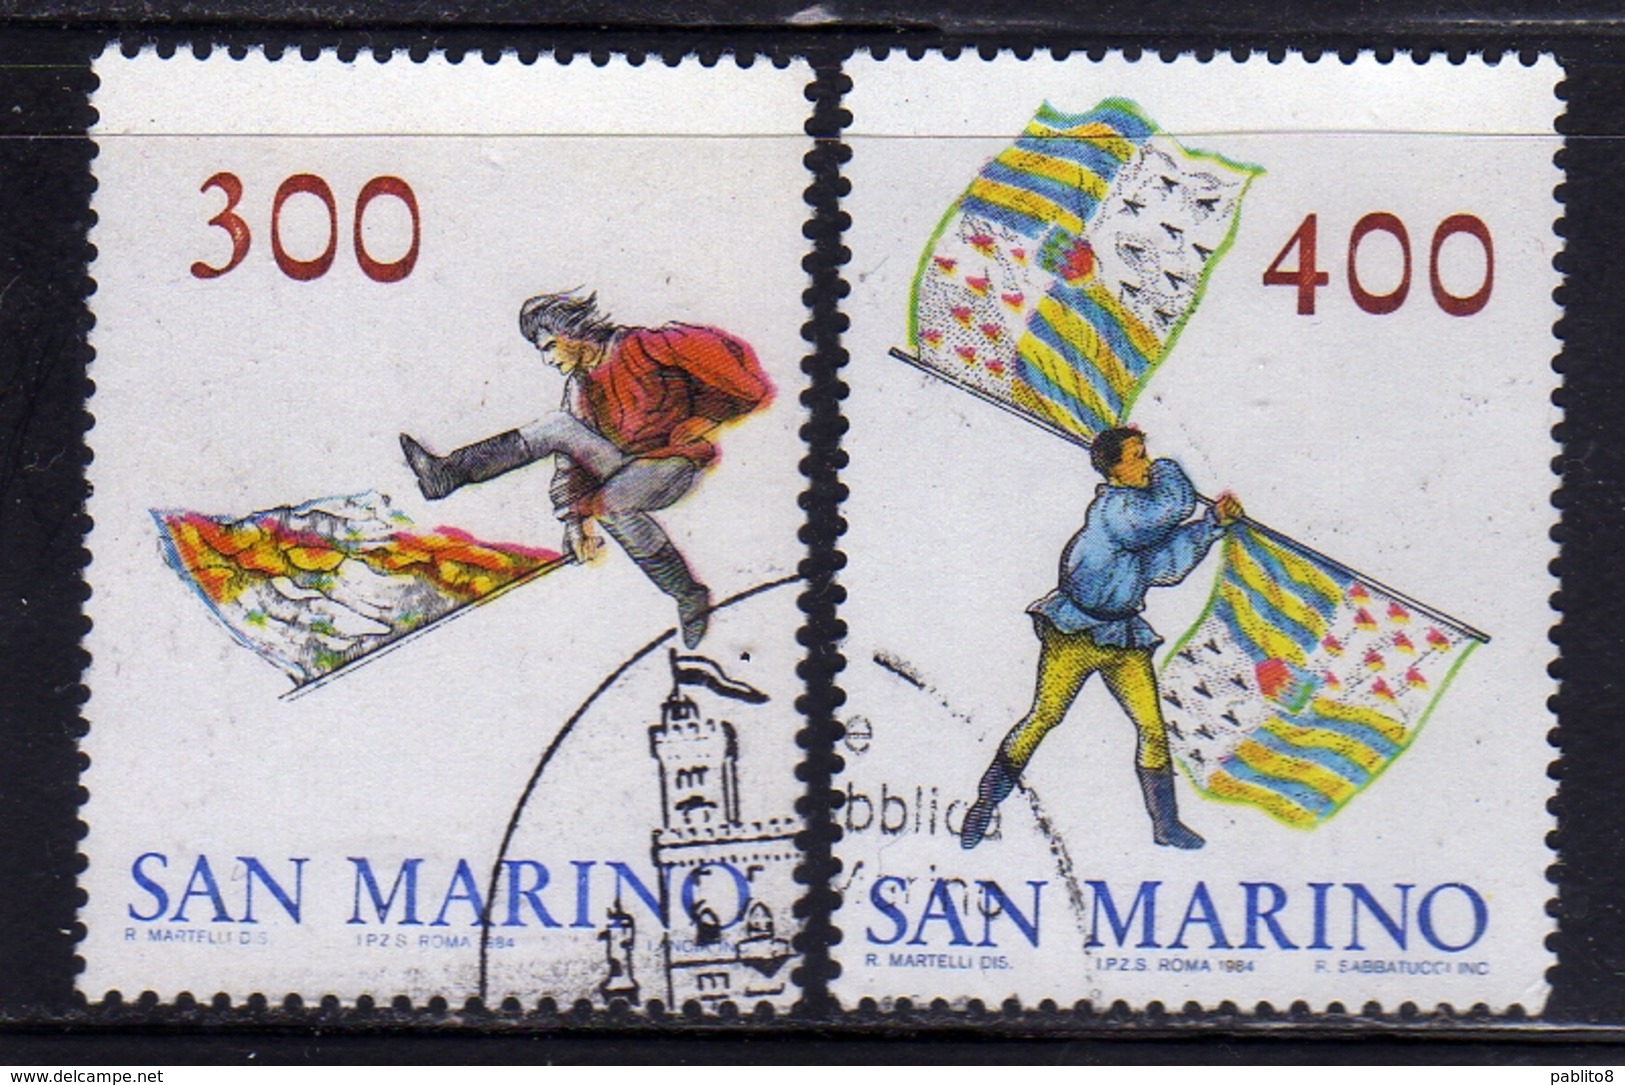 REPUBBLICA DI SAN MARINO 1984 GRUPPO SBANDIERATORI SERIE COMPLETA COMPLETE SET USATA USED OBLITERE' - Used Stamps